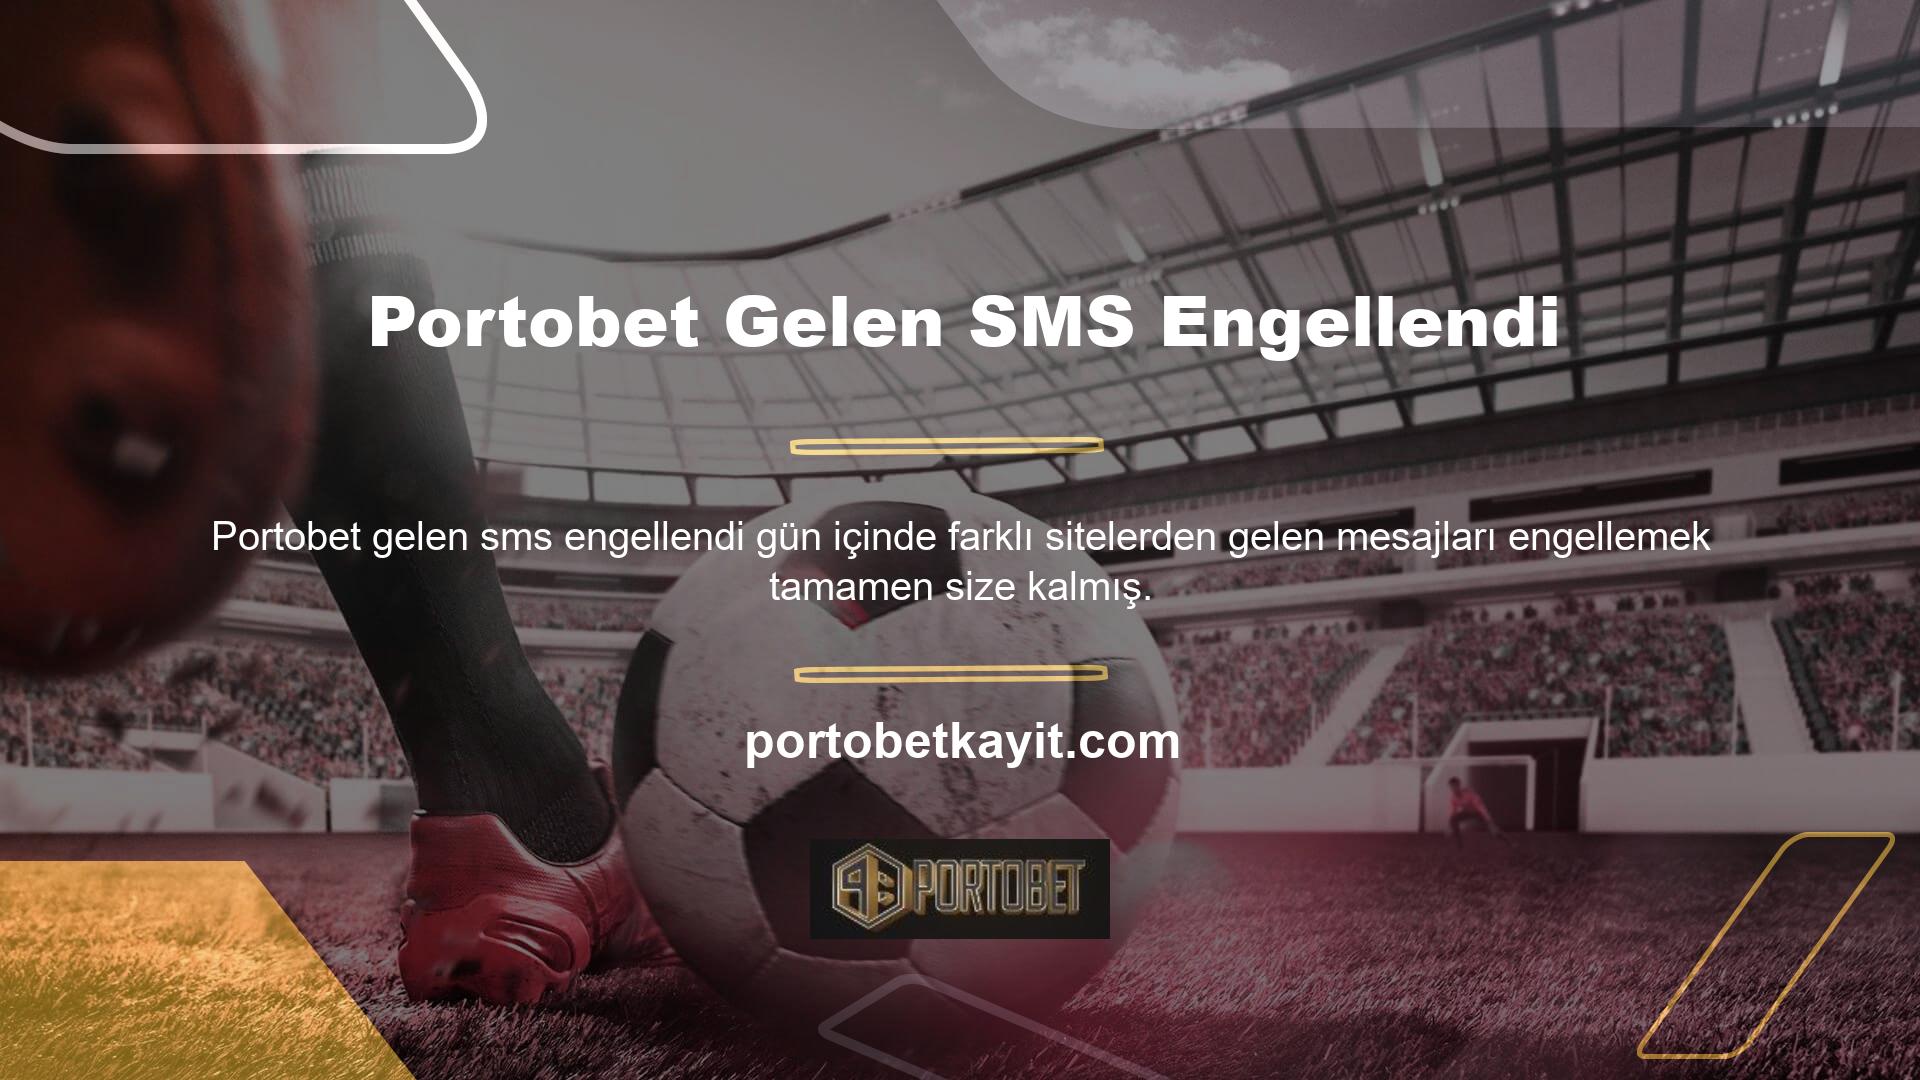 Bu nedenle, Portobet anti-SMS teması da çok basittir ve bir dakikadan az süren bir dizi eylem içerir